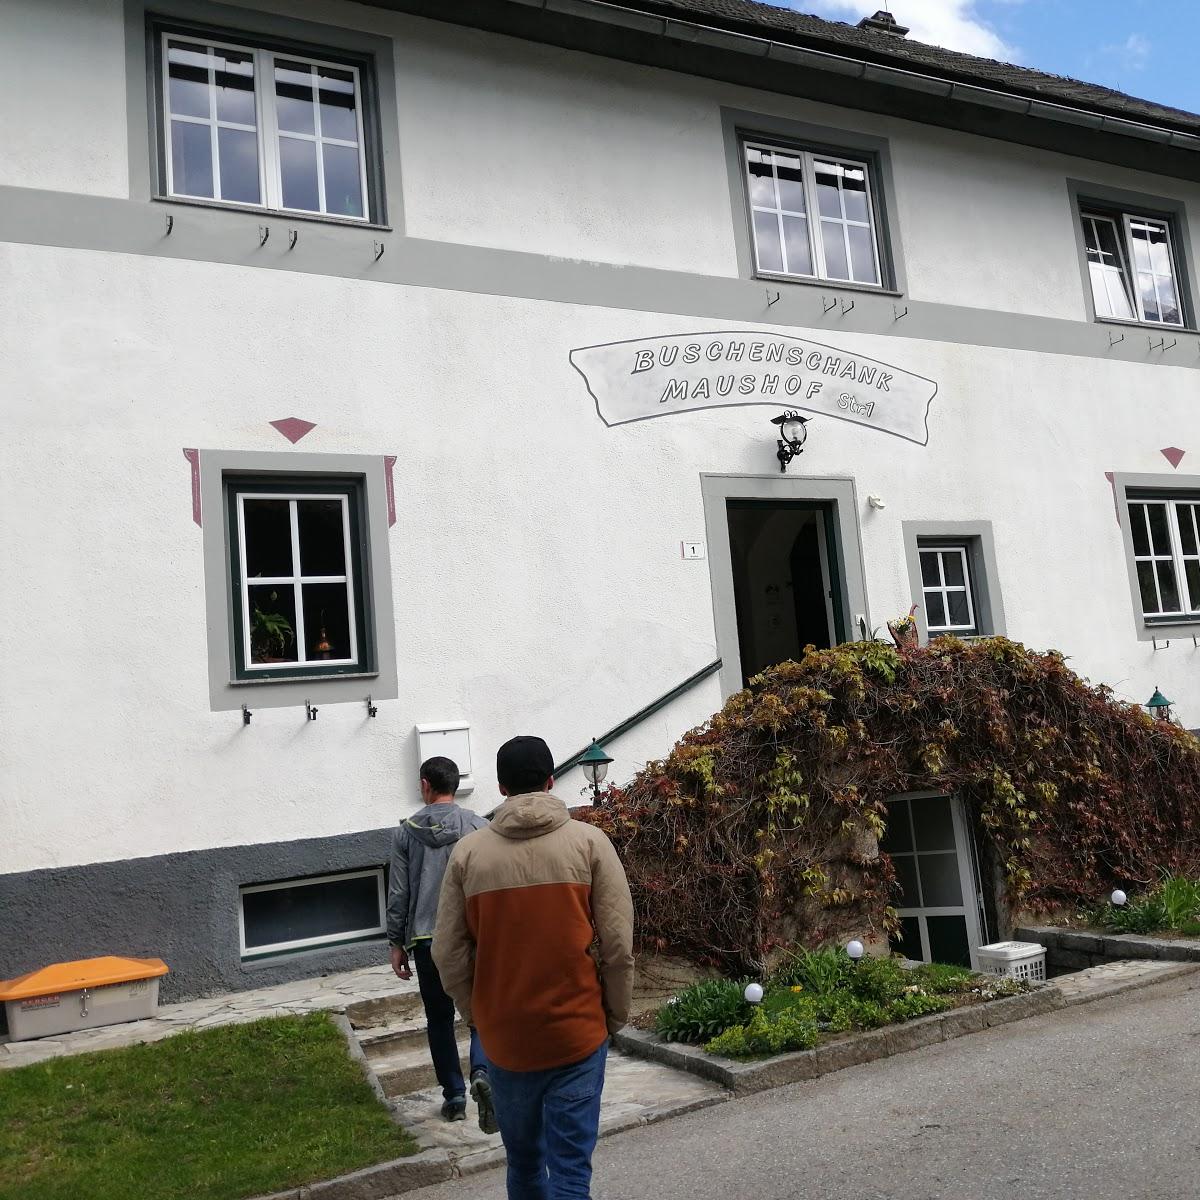 Restaurant "Mostbuschenschank Maushof" in Spital am Pyhrn